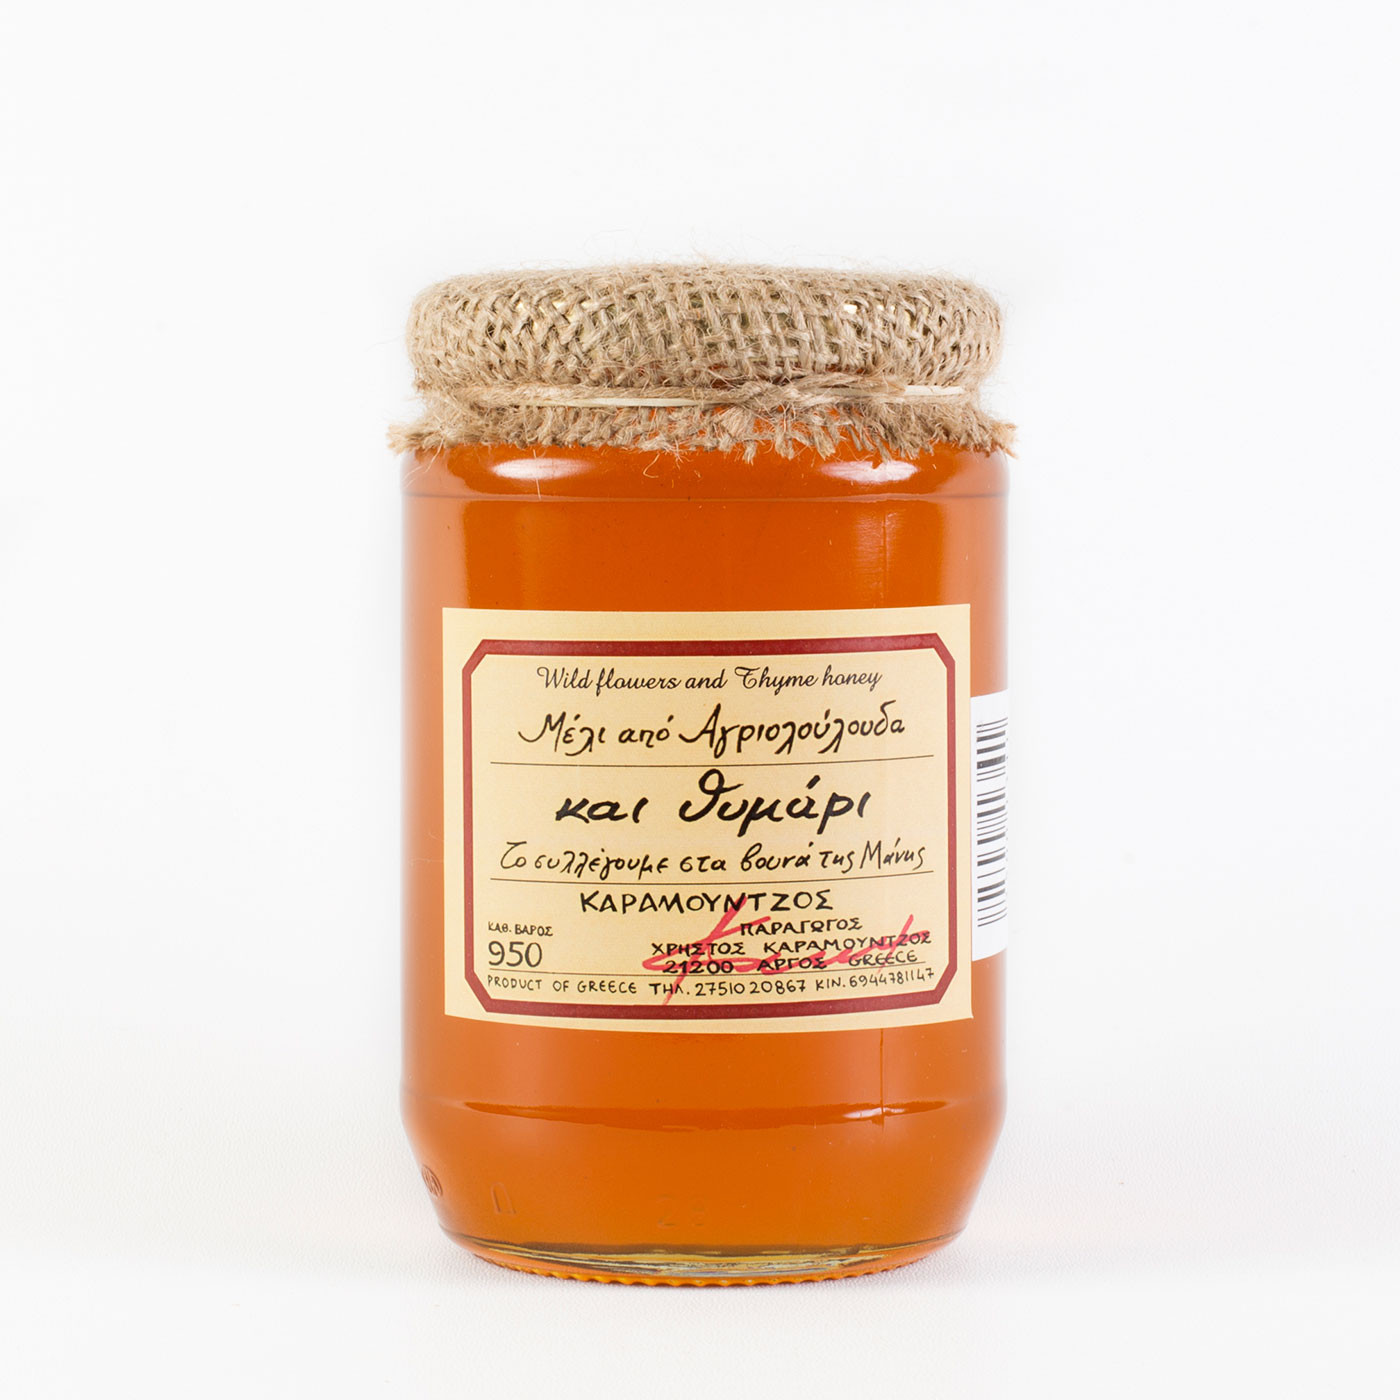 Μέλι από Αγριολούλουδα και Θυμάρι Μάνης "Καραμούντζος" 950 γρ.